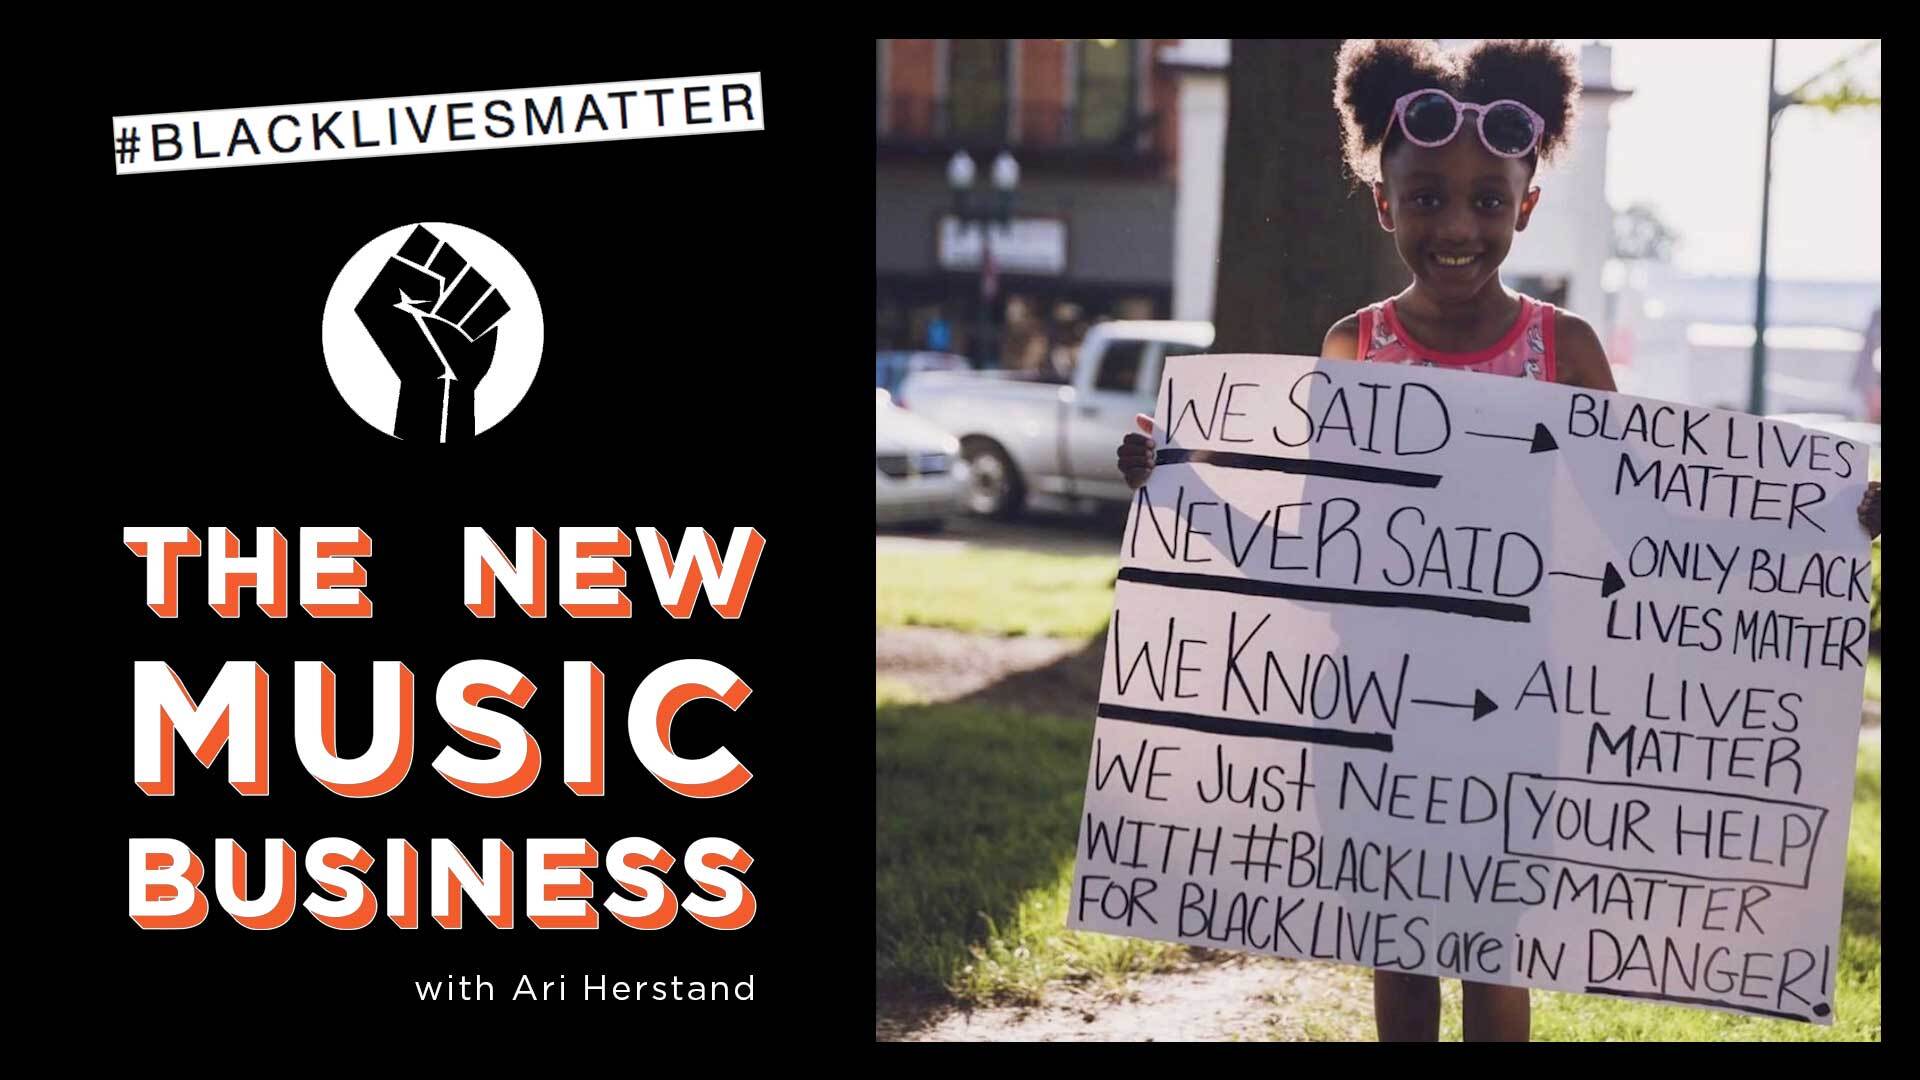 White Musicians for Black Lives - Ari's Take